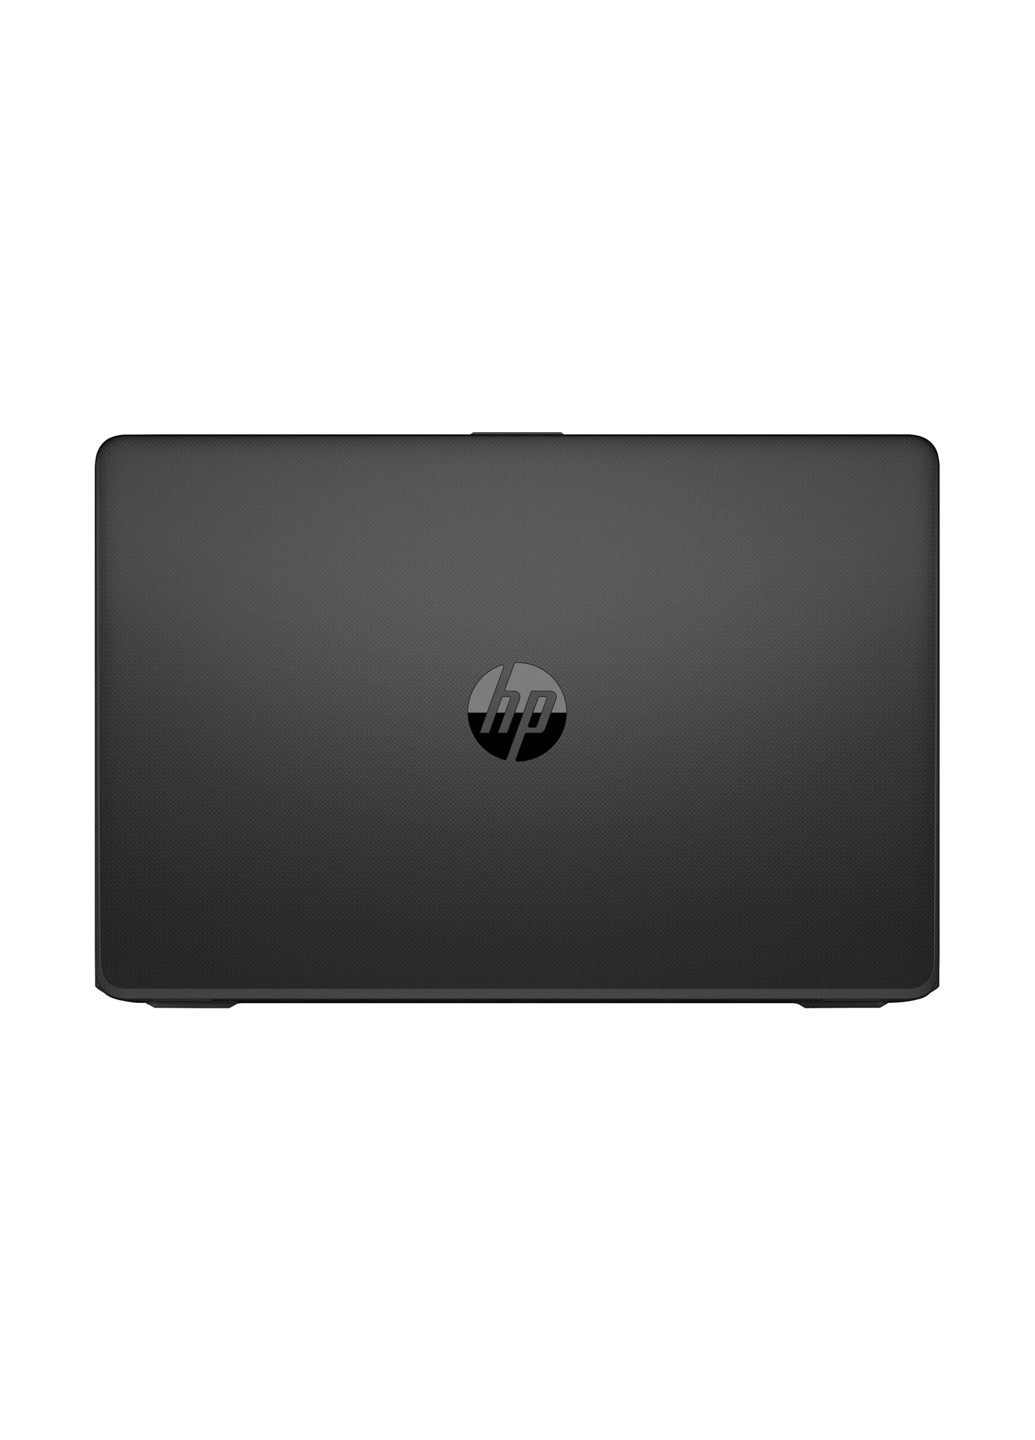 Ноутбук HP 15-bs182ur (4UM08EA) Black чорний